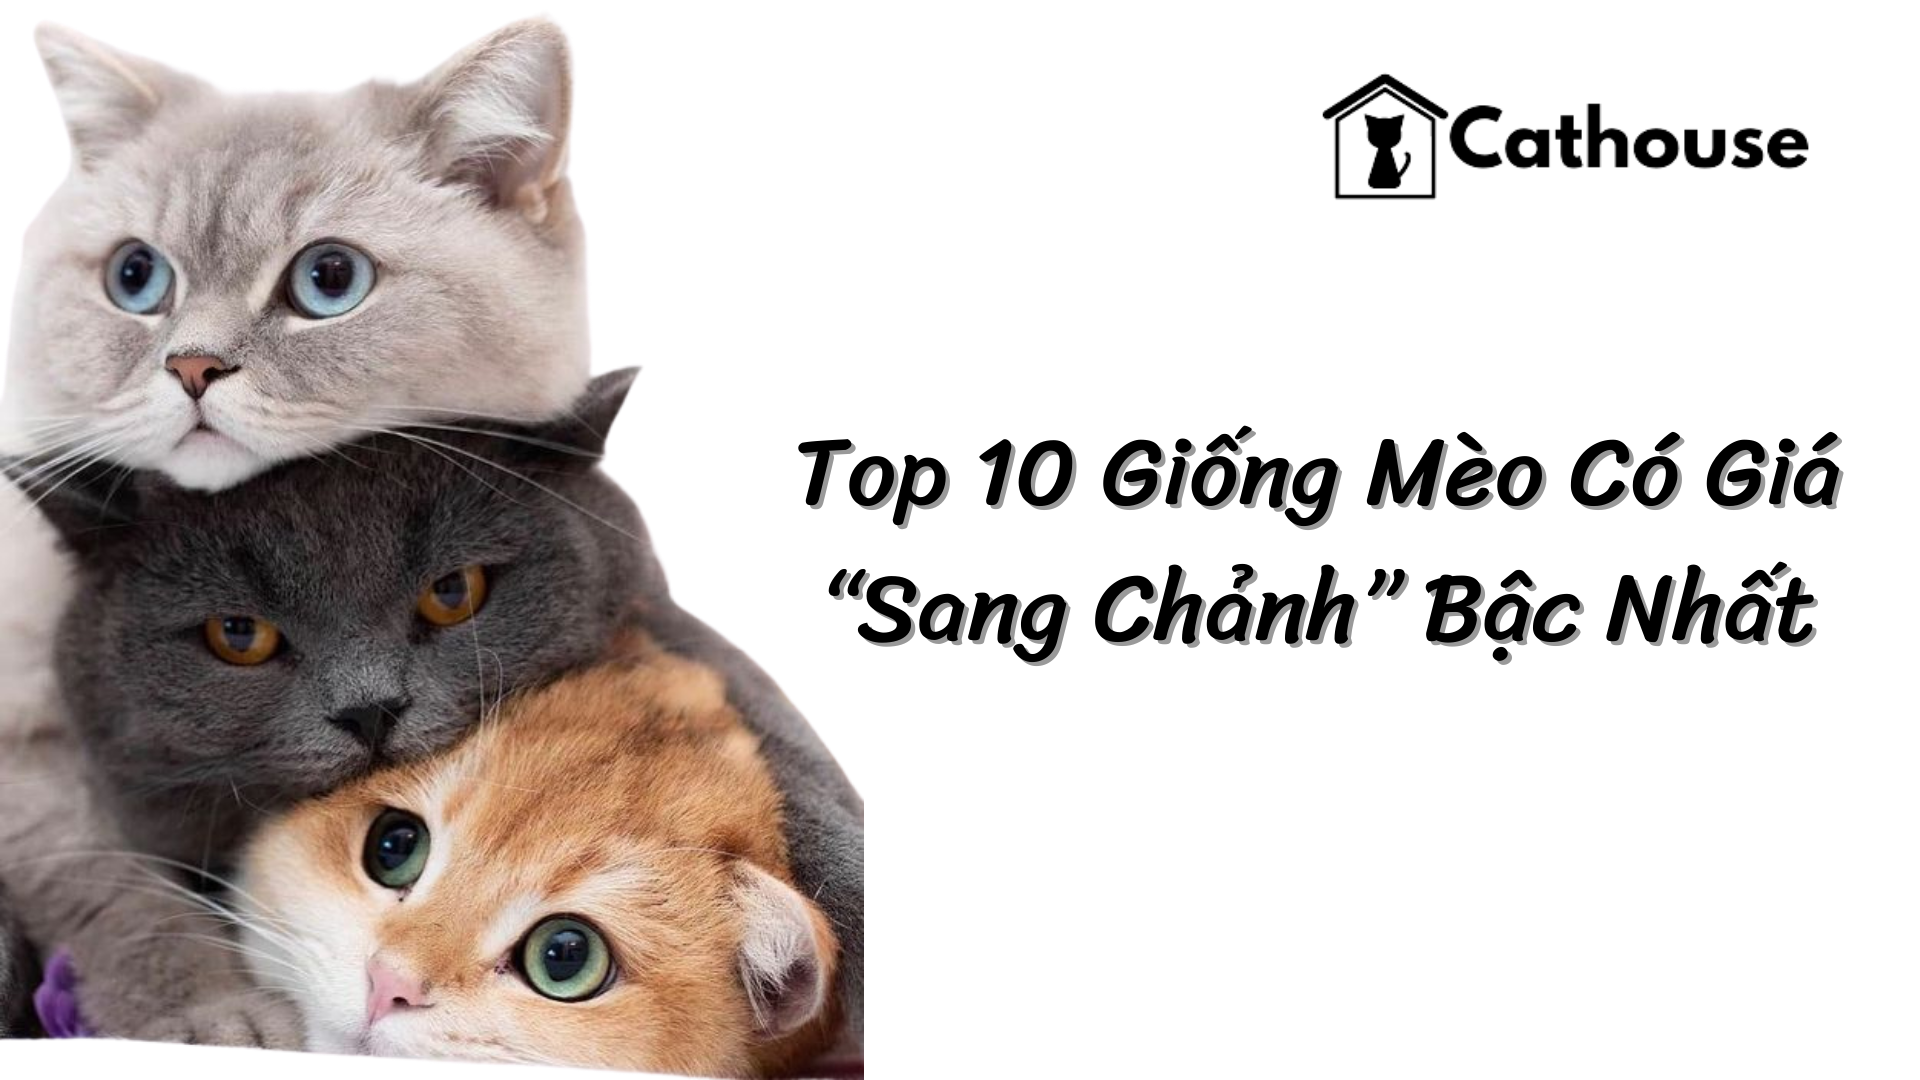 Top 10 Giống Mèo Có Giá “Sang Chảnh” Bậc Nhất Bạn Có Biết